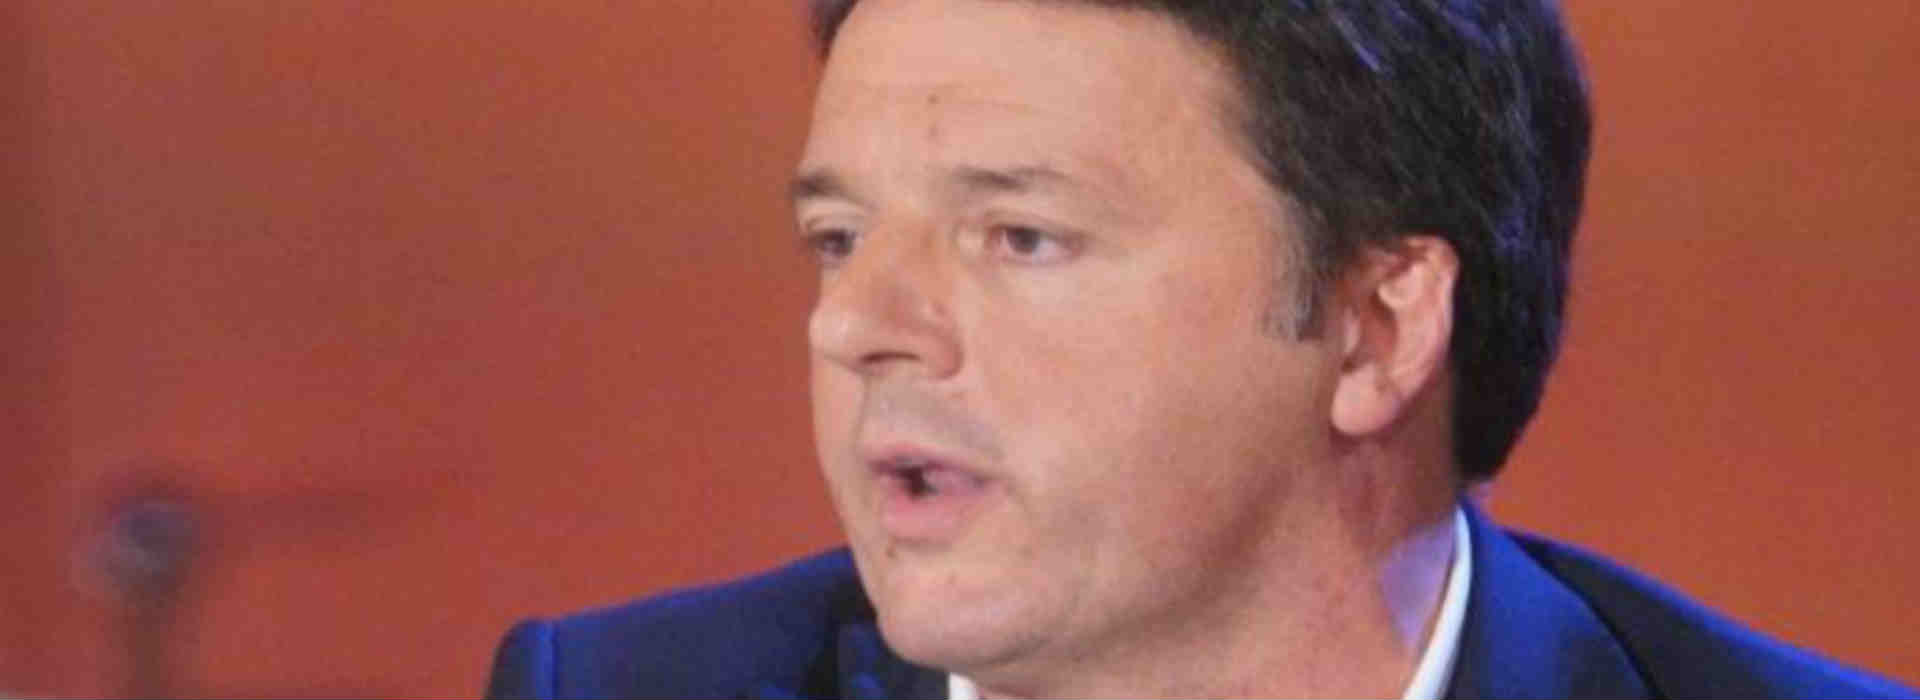 Fondazione Open, Renzi a testa bassa contro i pm: "È intimidazione"